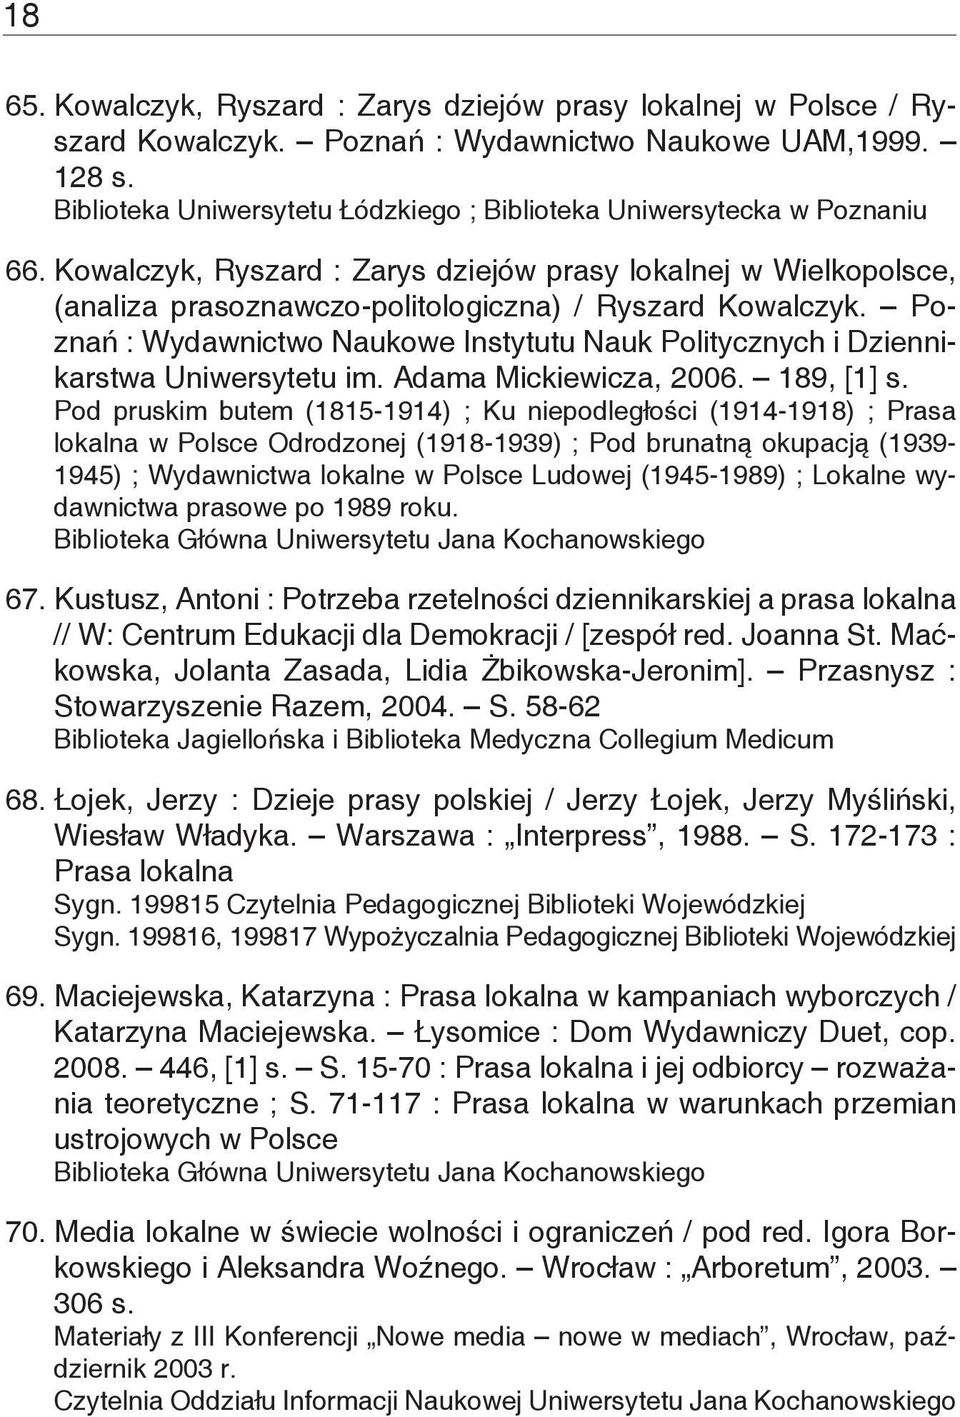 Poznań : Wydawnictwo Naukowe Instytutu Nauk Politycznych i Dziennikarstwa Uniwersytetu im. Adama Mickiewicza, 2006. 189, [1] s.